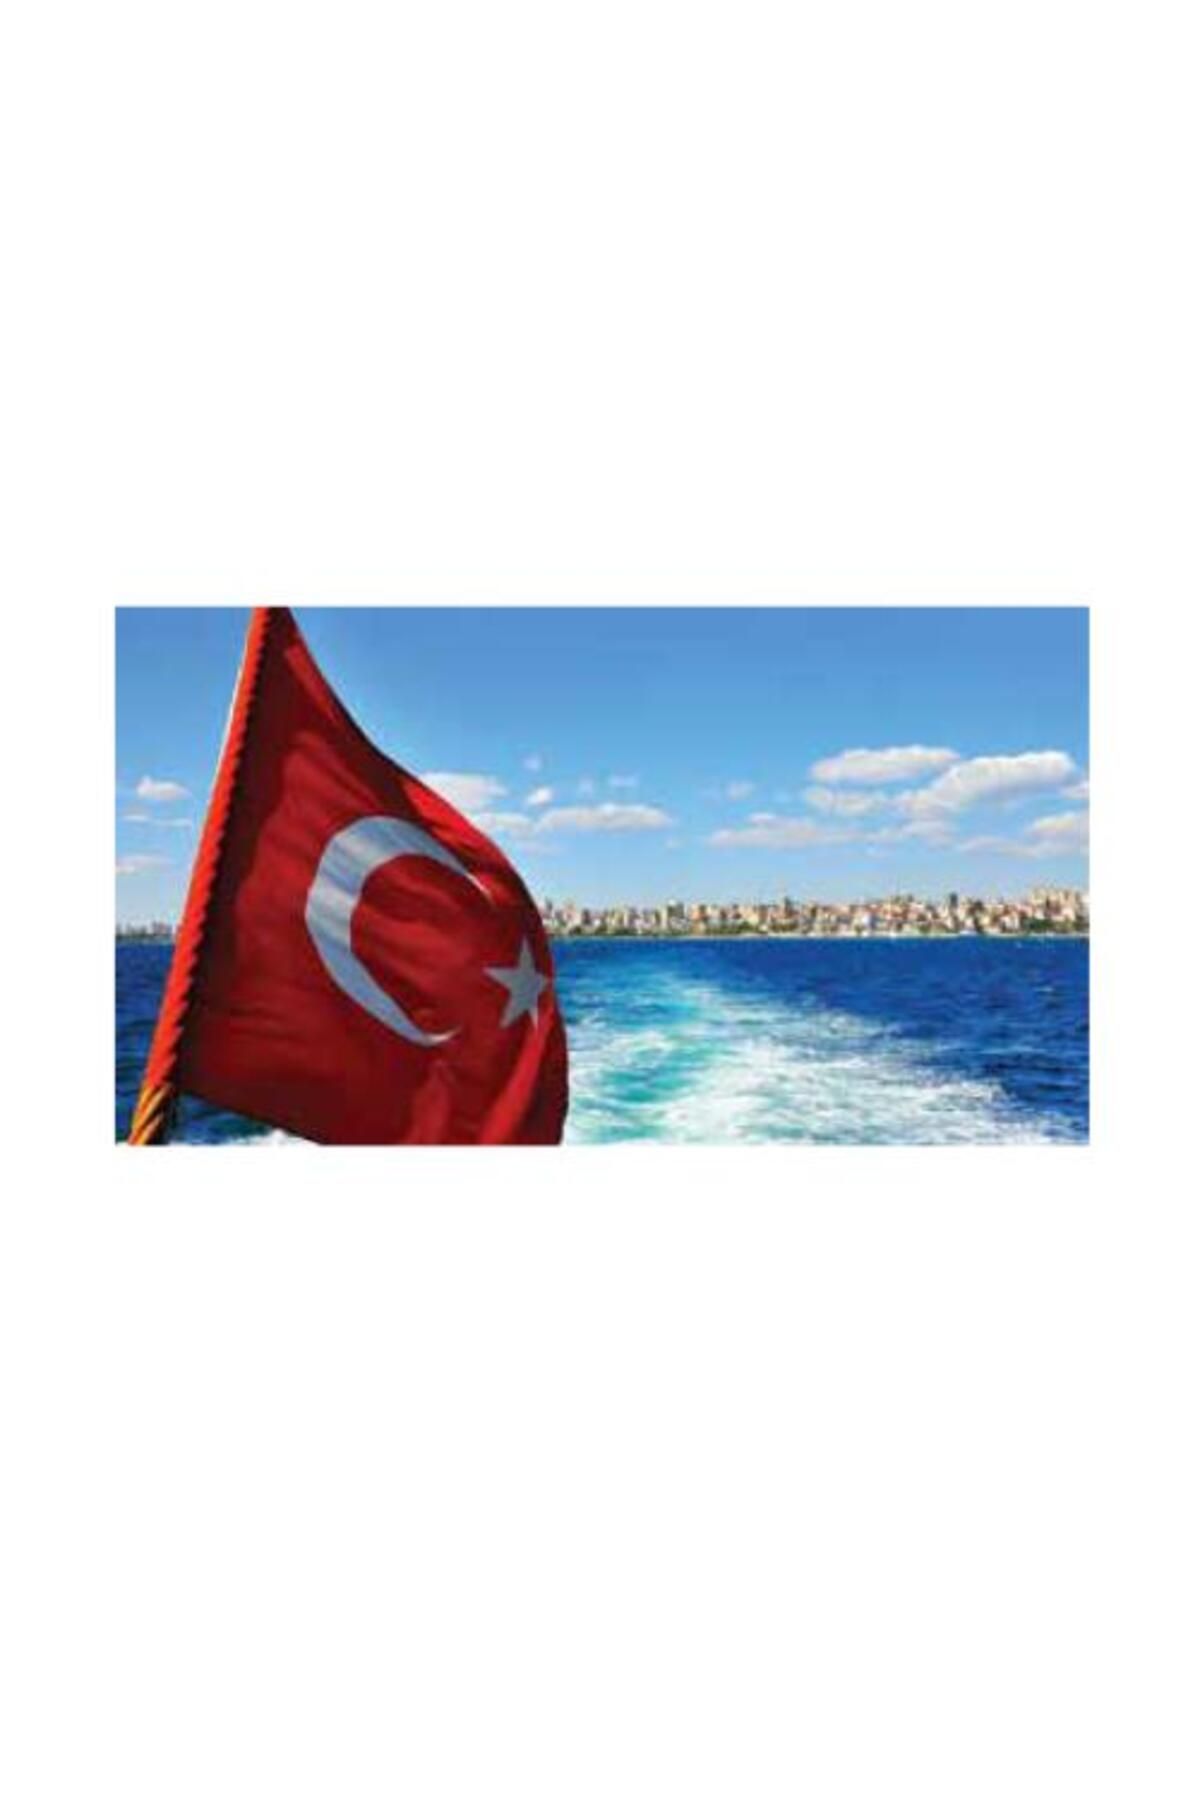 KALE Türk Bayrağı 80x120cm